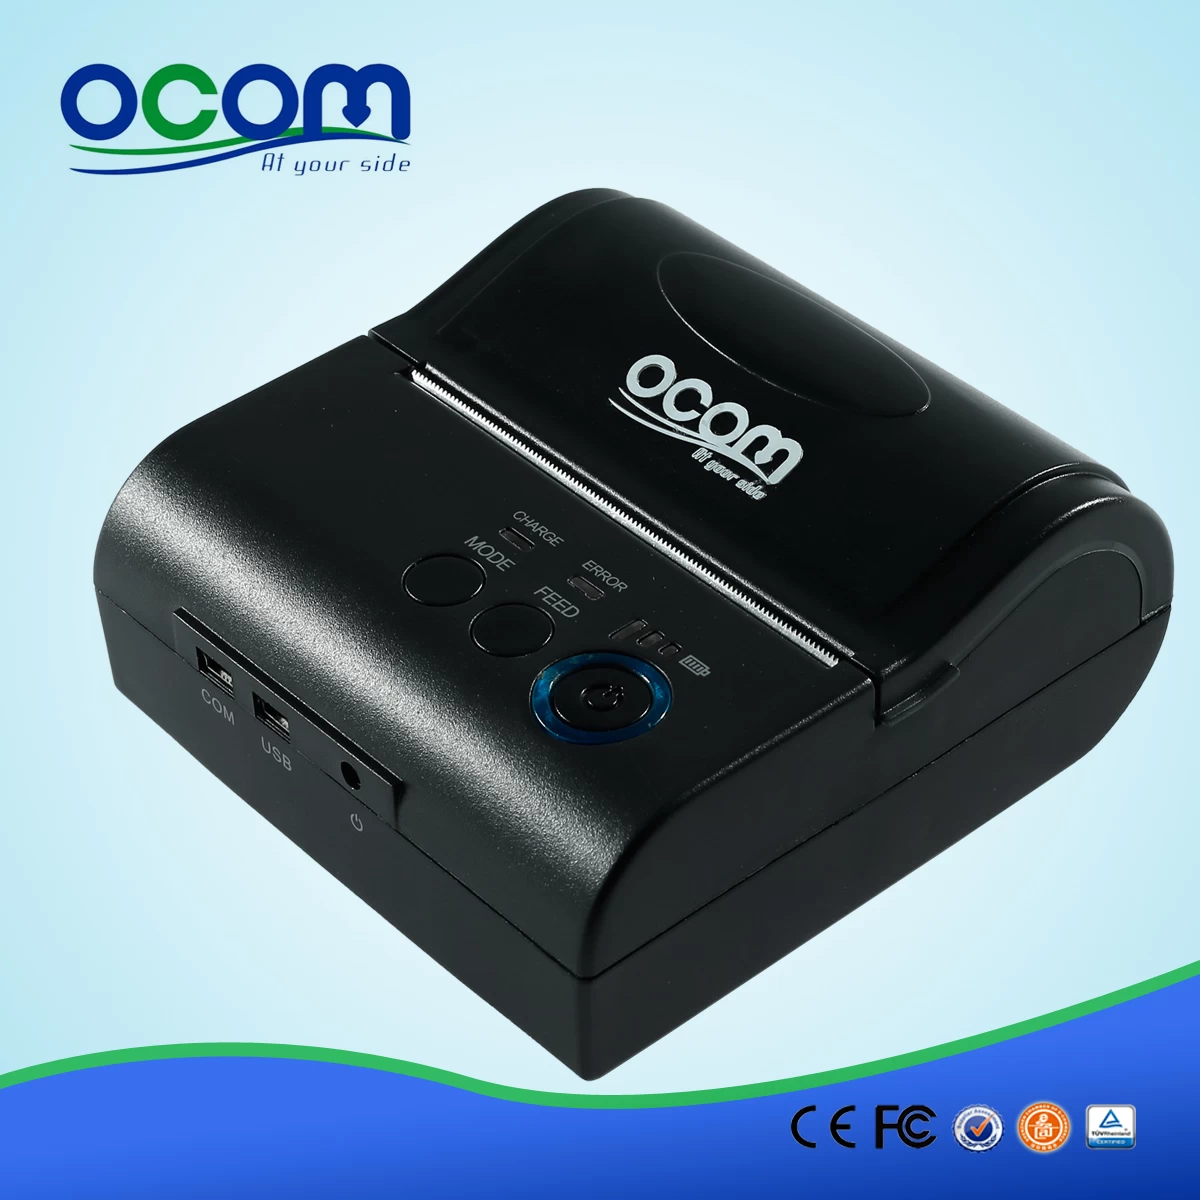 Quente! OCPP-M082 mais barato mini-impressora Bluetooth portátil com adaptador